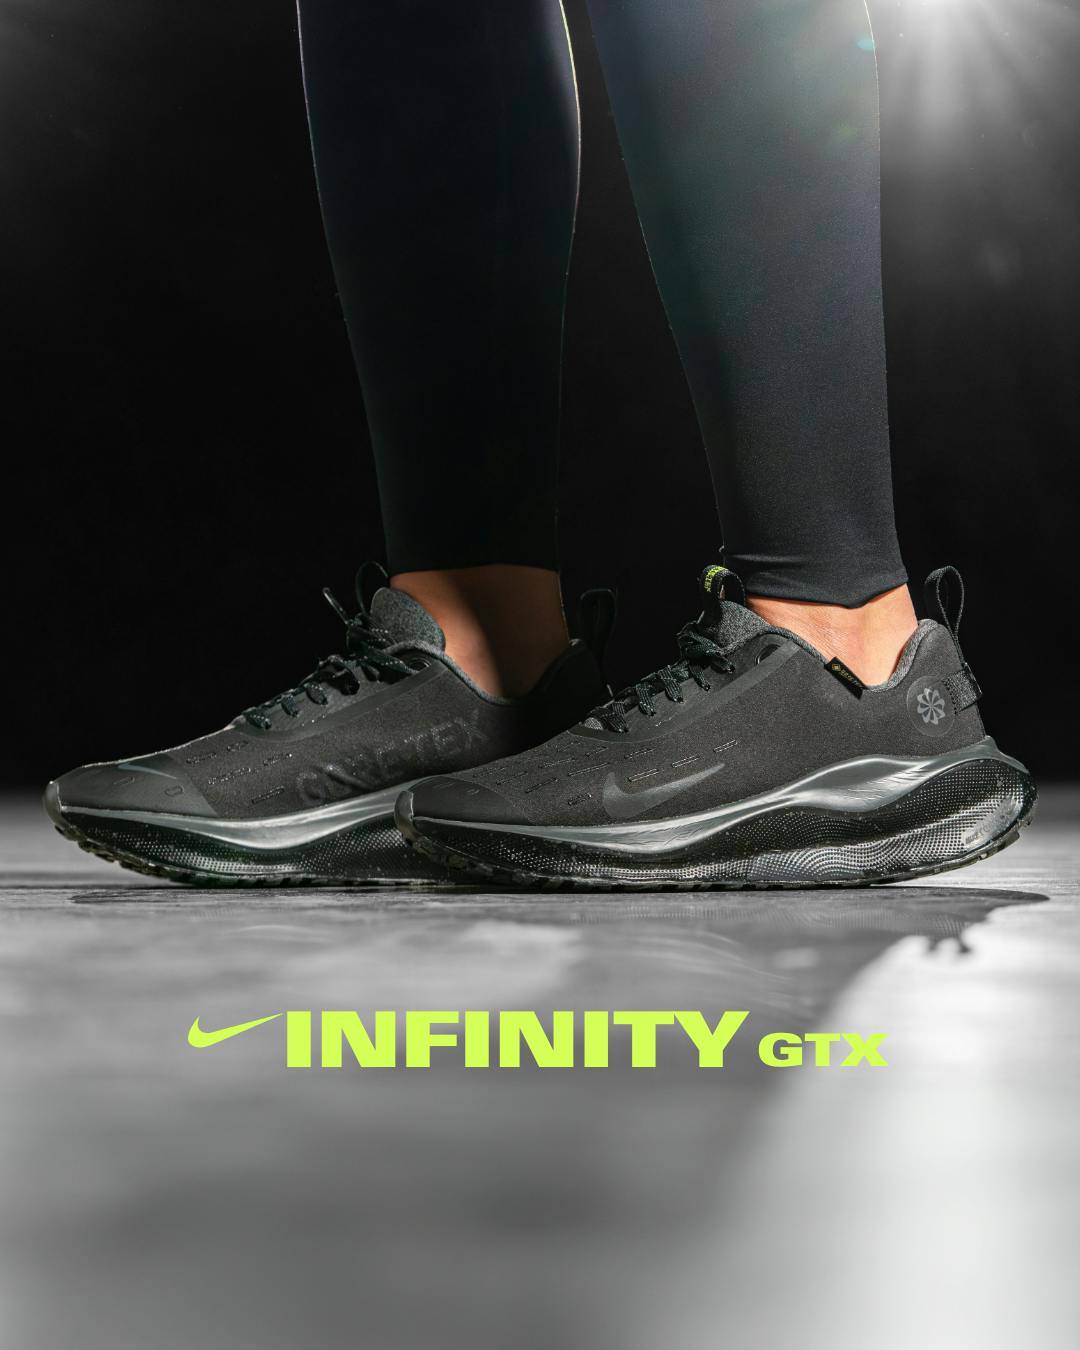 Nike infinity gtx